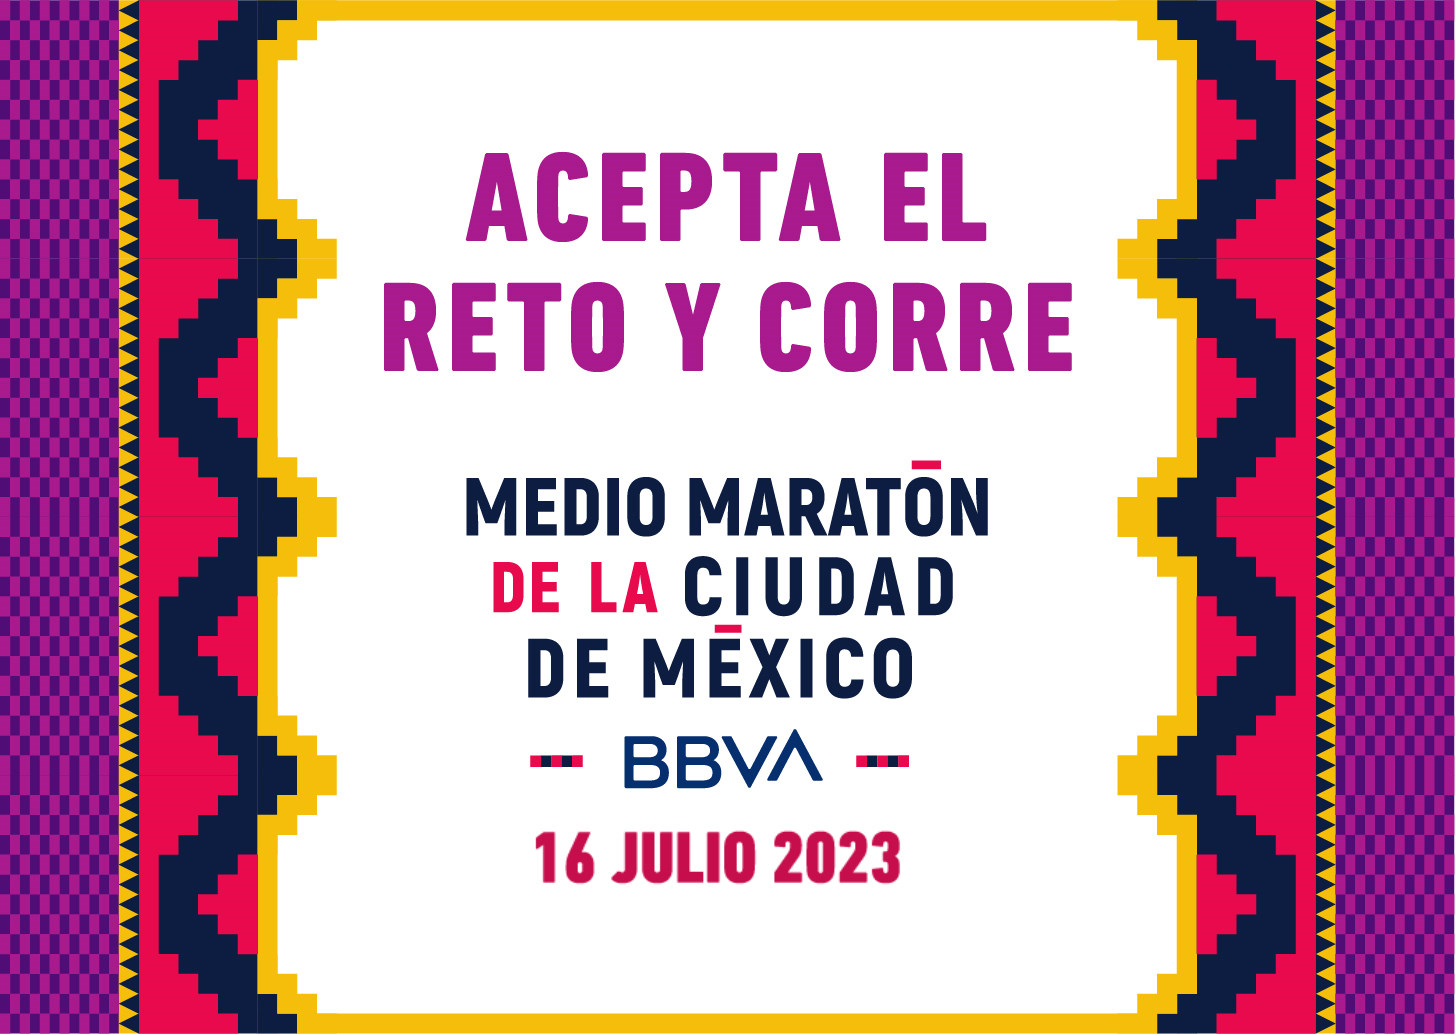 XV Medio Maratón de la Ciudad de México BBVA 2023